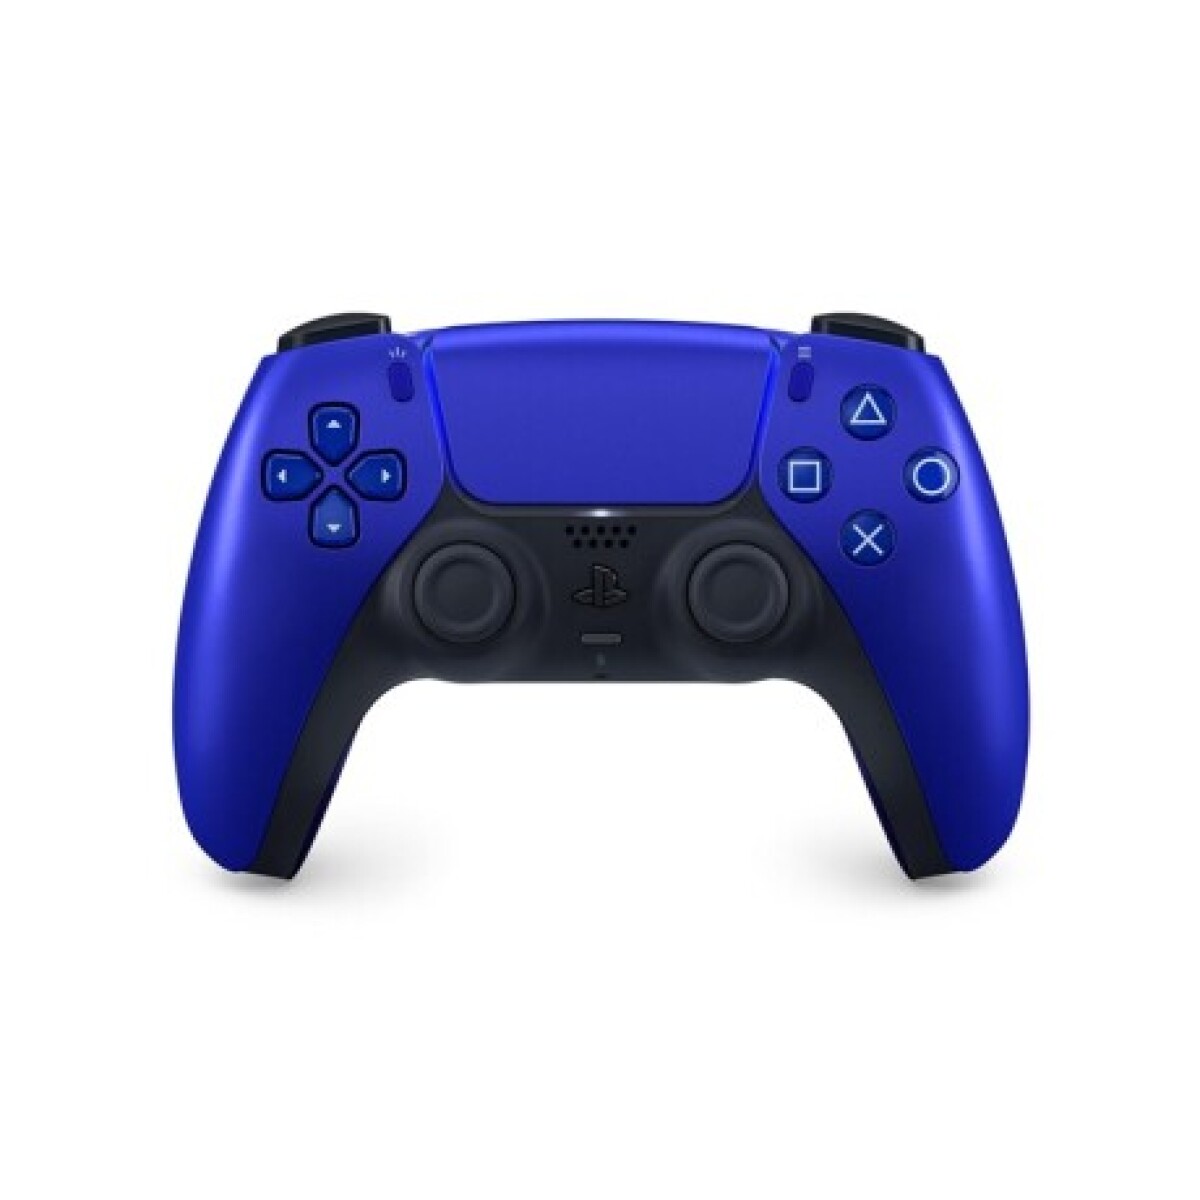 Joystick Inalámbrico Dualsense Sony Ps5 Playstation 5 - Cobalt Blue 